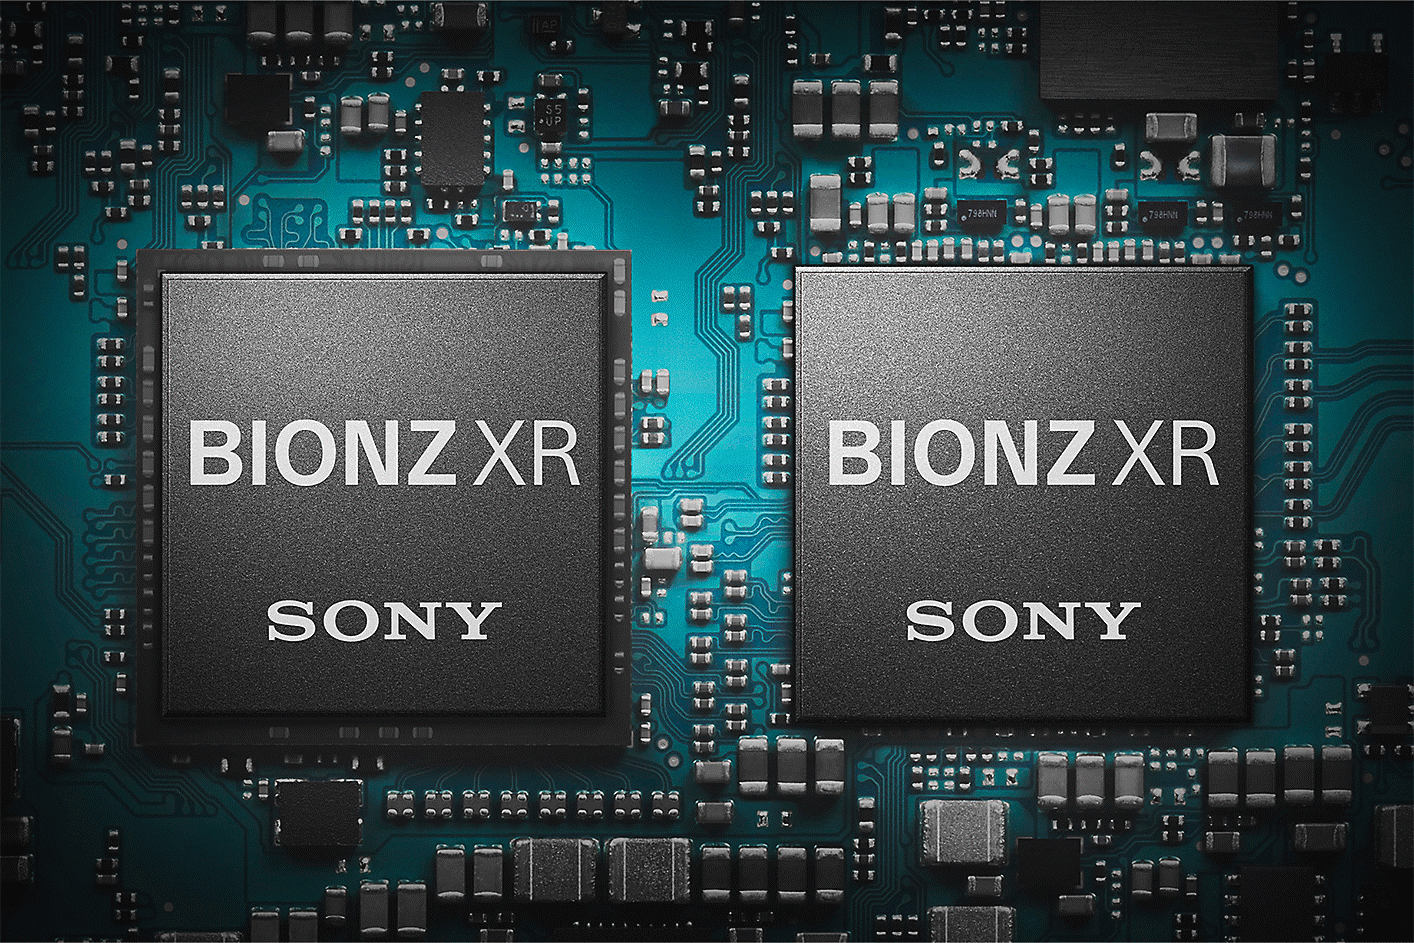 A BIONZ XR képfeldolgozó processzor képe